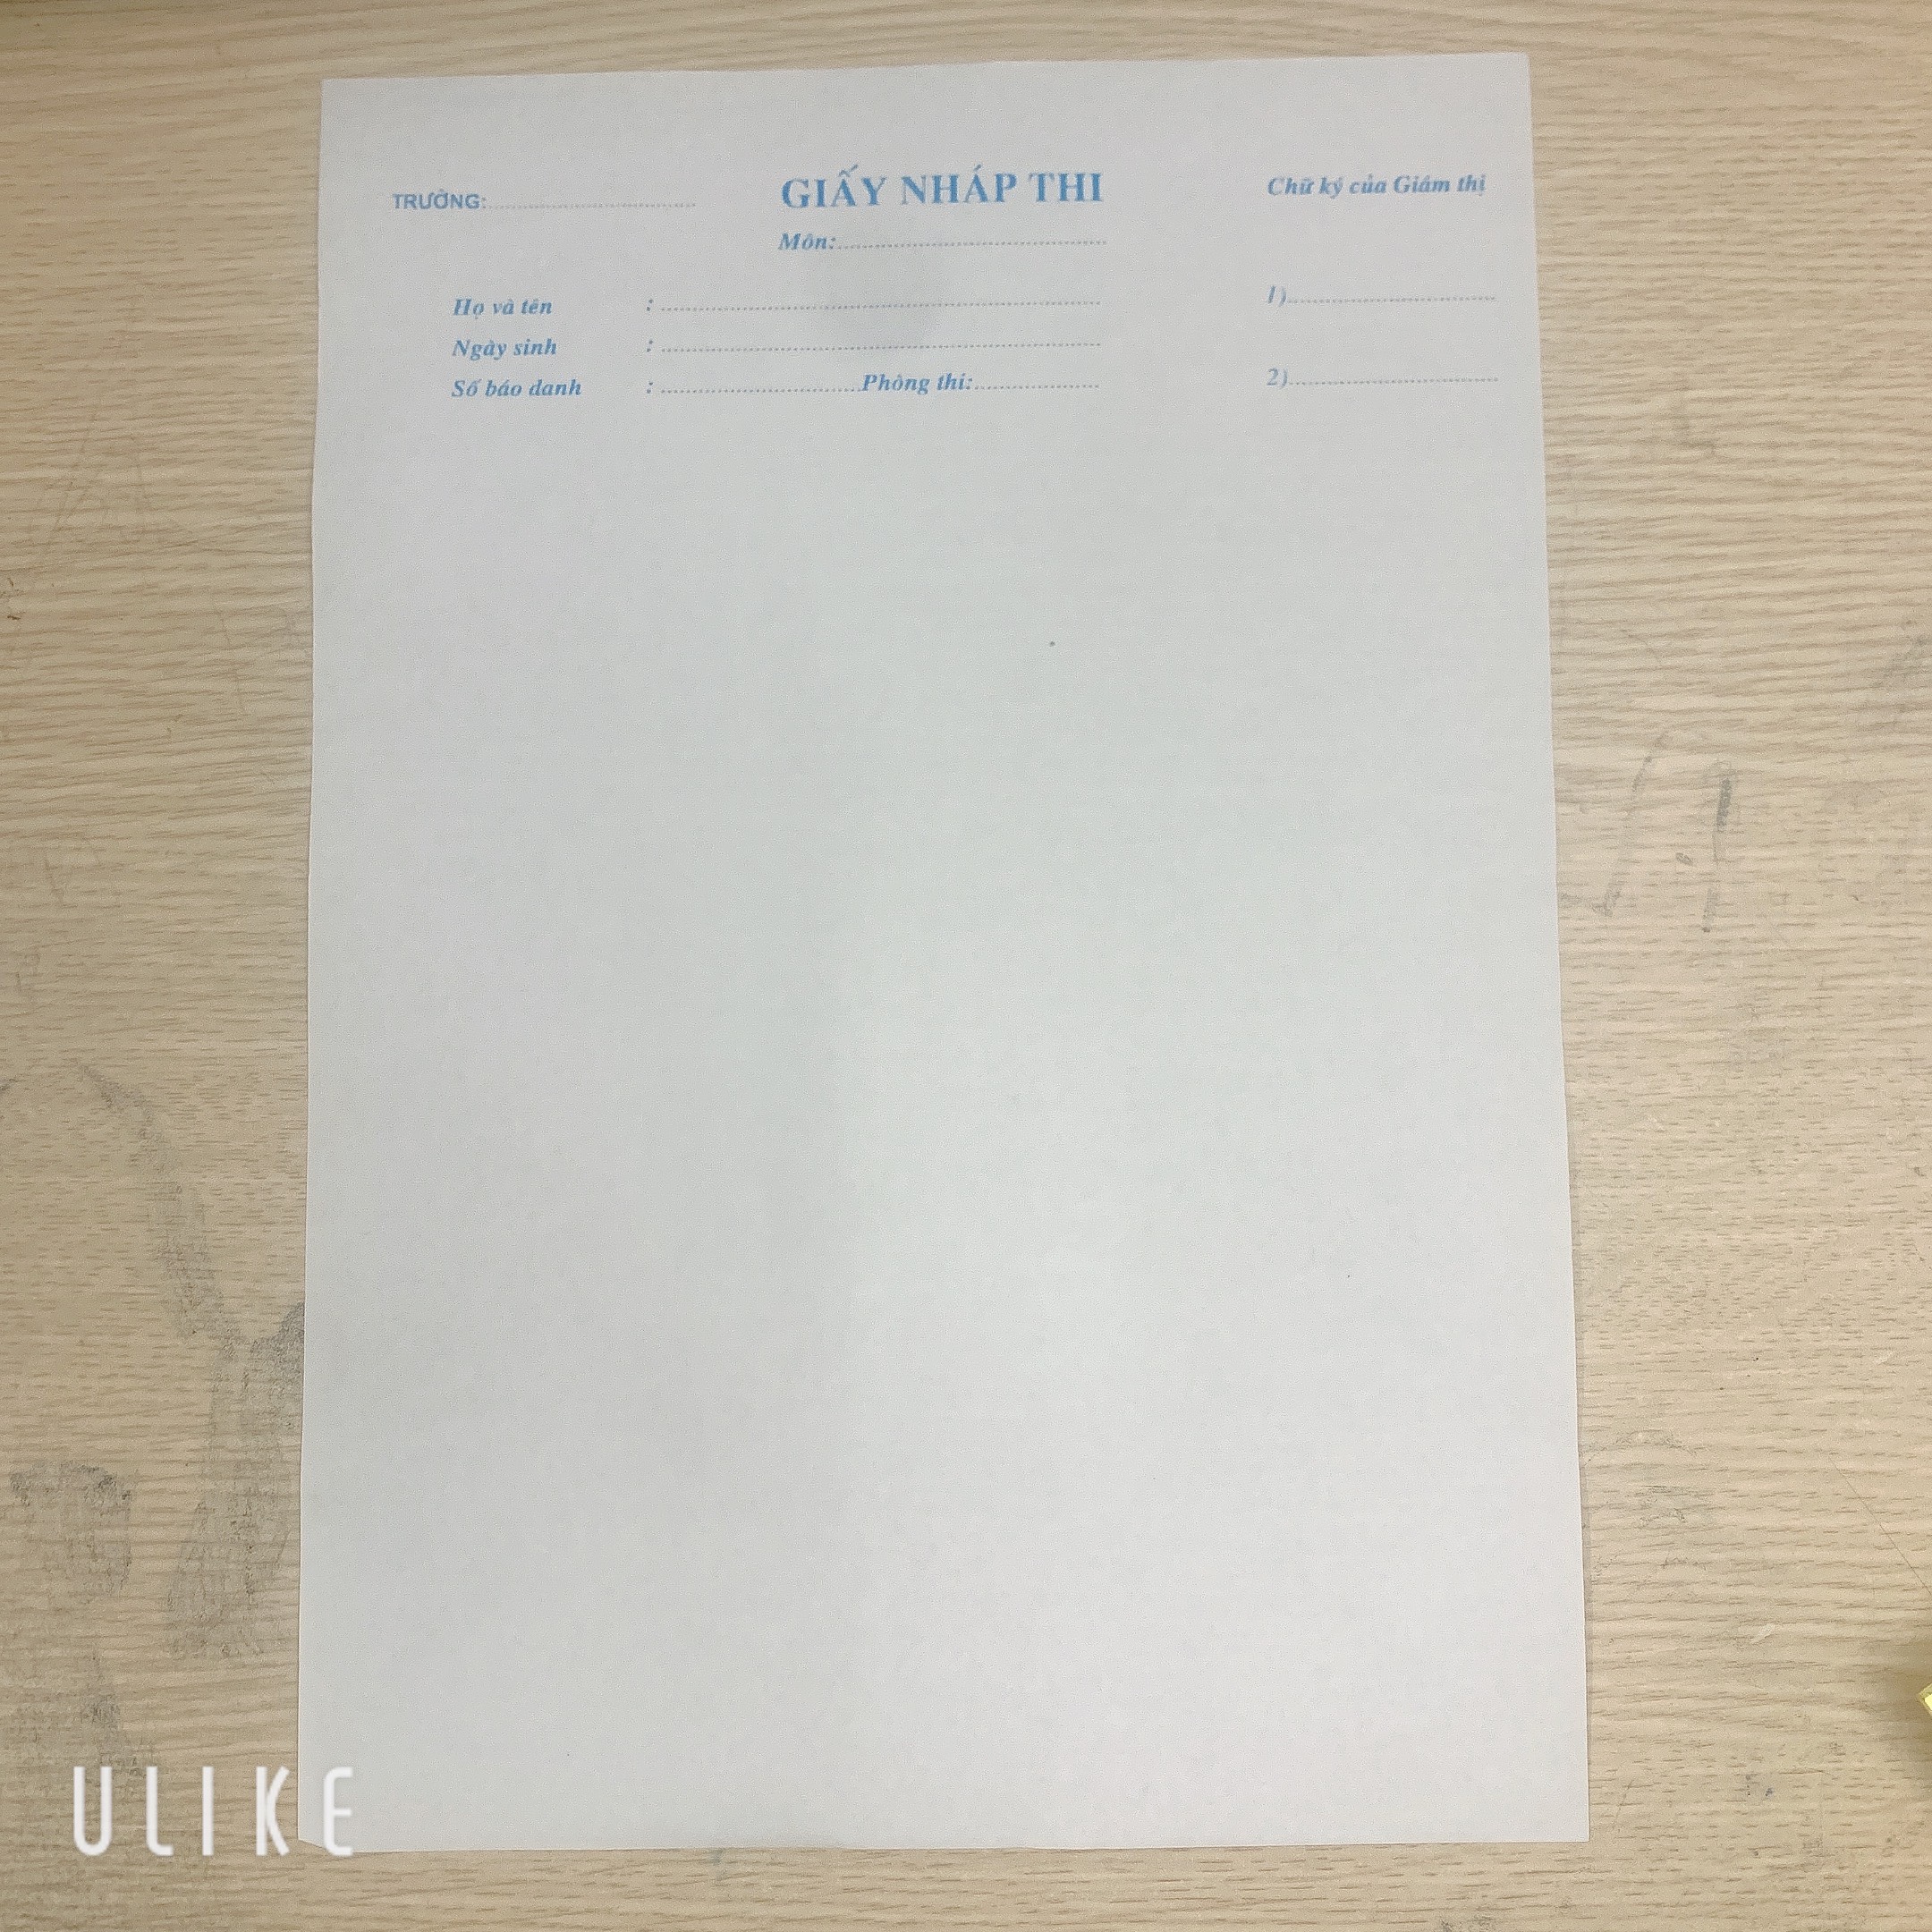 Combo 100 tờ giấy nháp thi mẫu của Bộ GD&ĐT - Khổ A4, kích thước 210x297mm, chữ in màu xanh